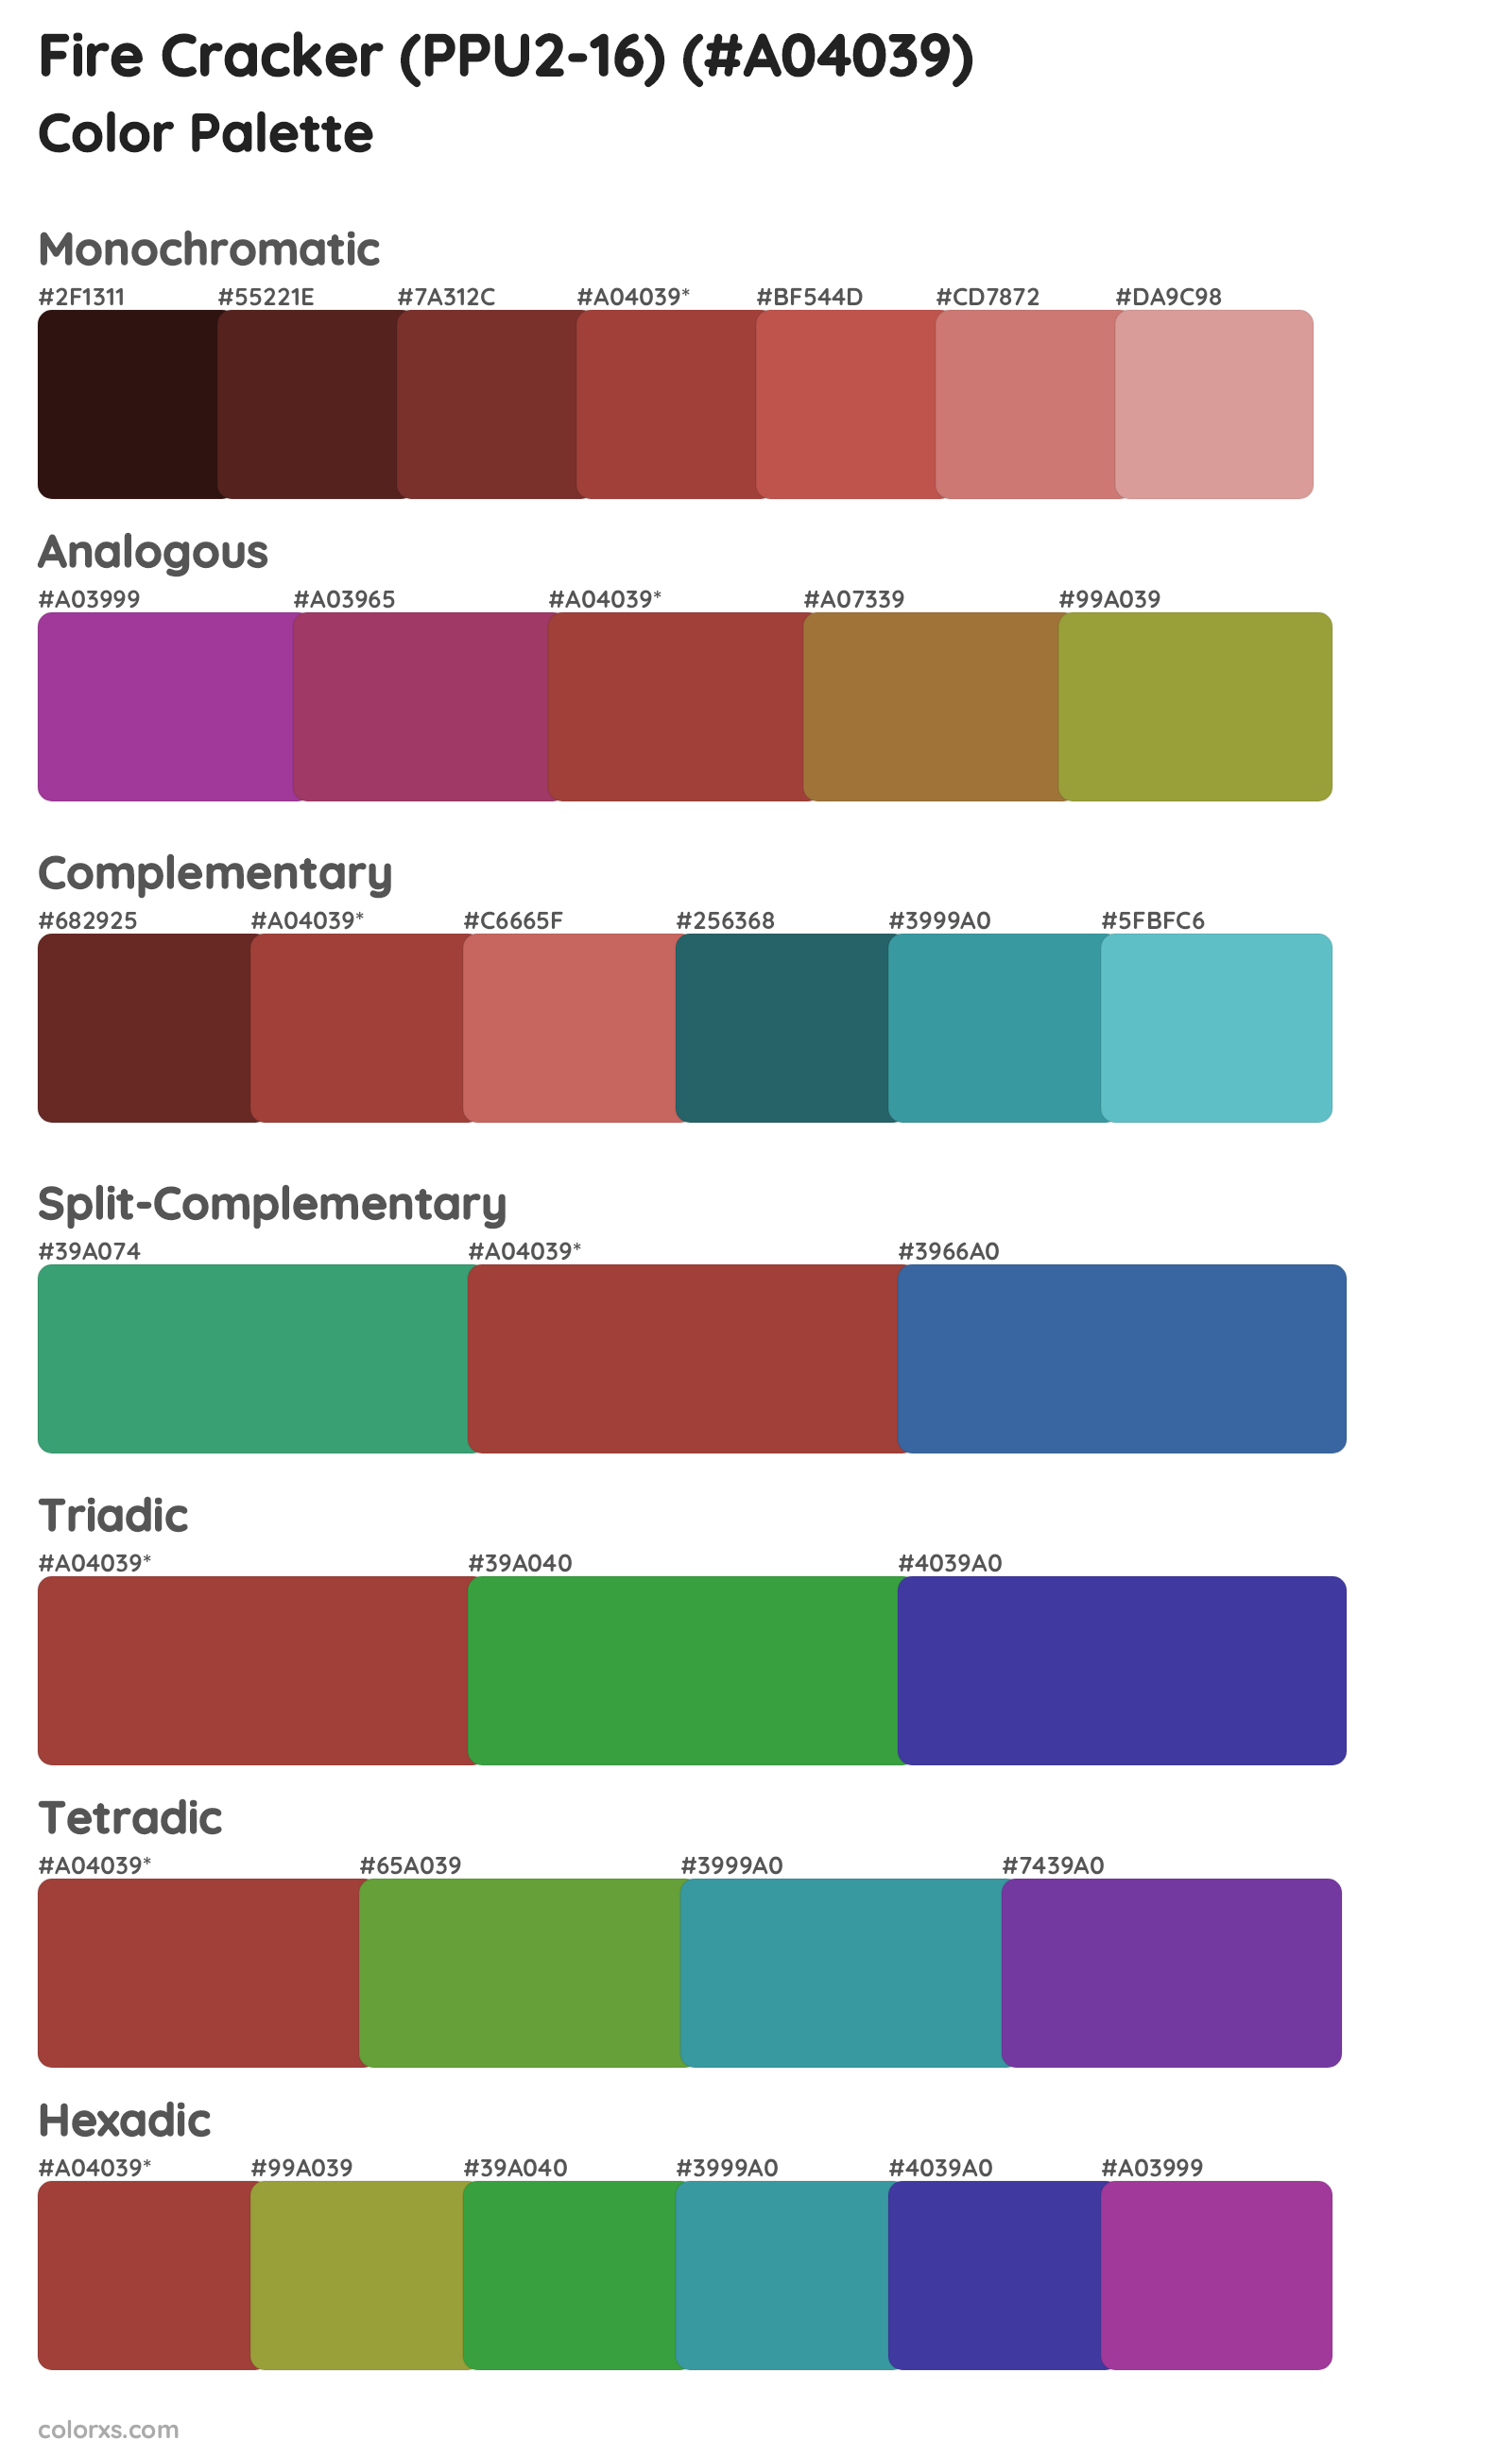 Fire Cracker (PPU2-16) Color Scheme Palettes